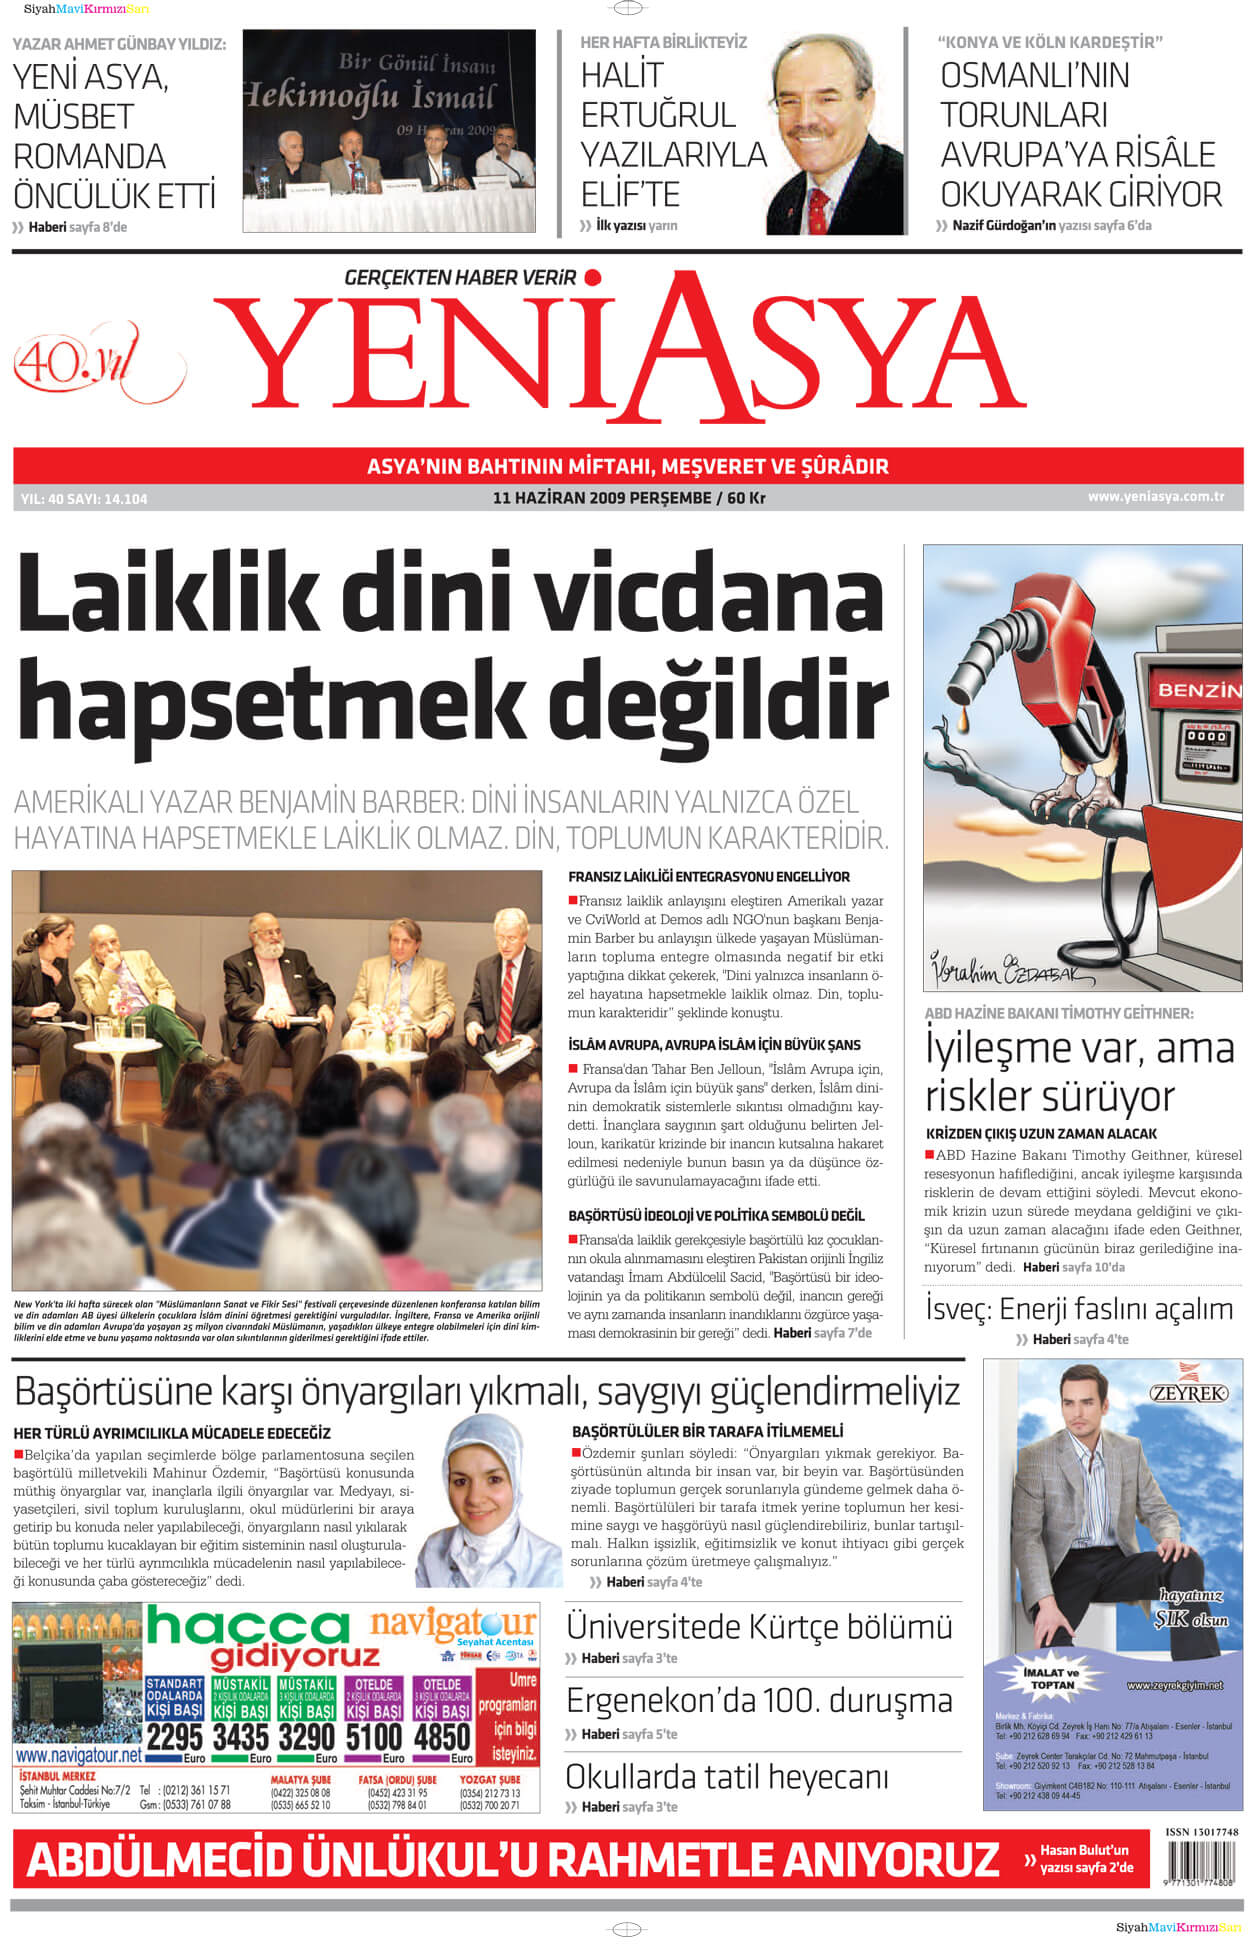 Turkish Newspapers 44 Yeni Asya